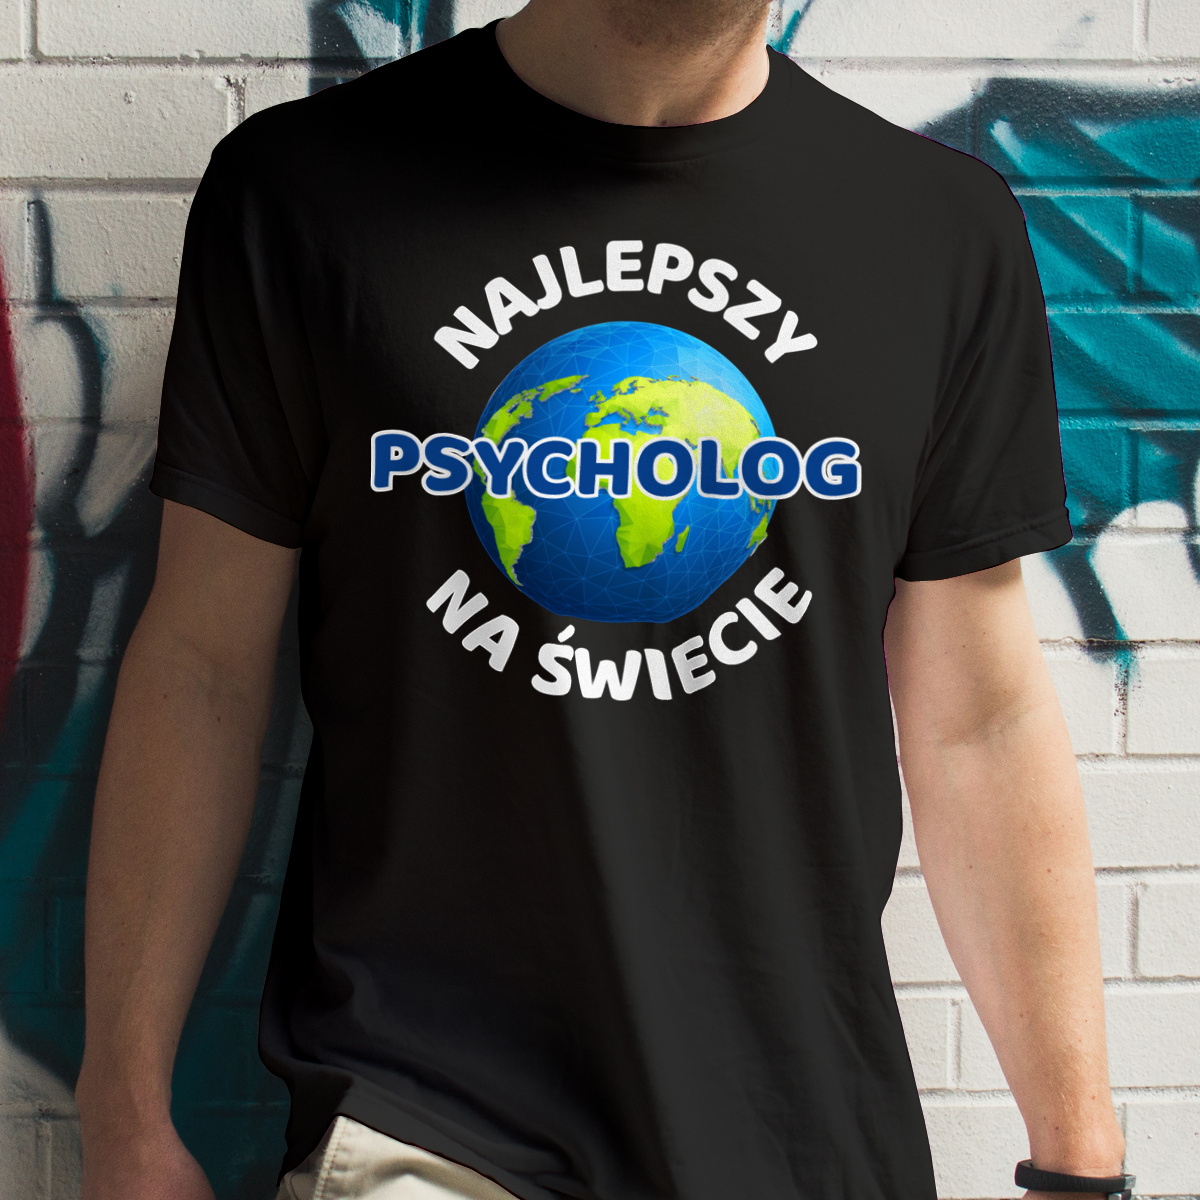 Najlepszy Psycholog Na Świecie - Męska Koszulka Czarna